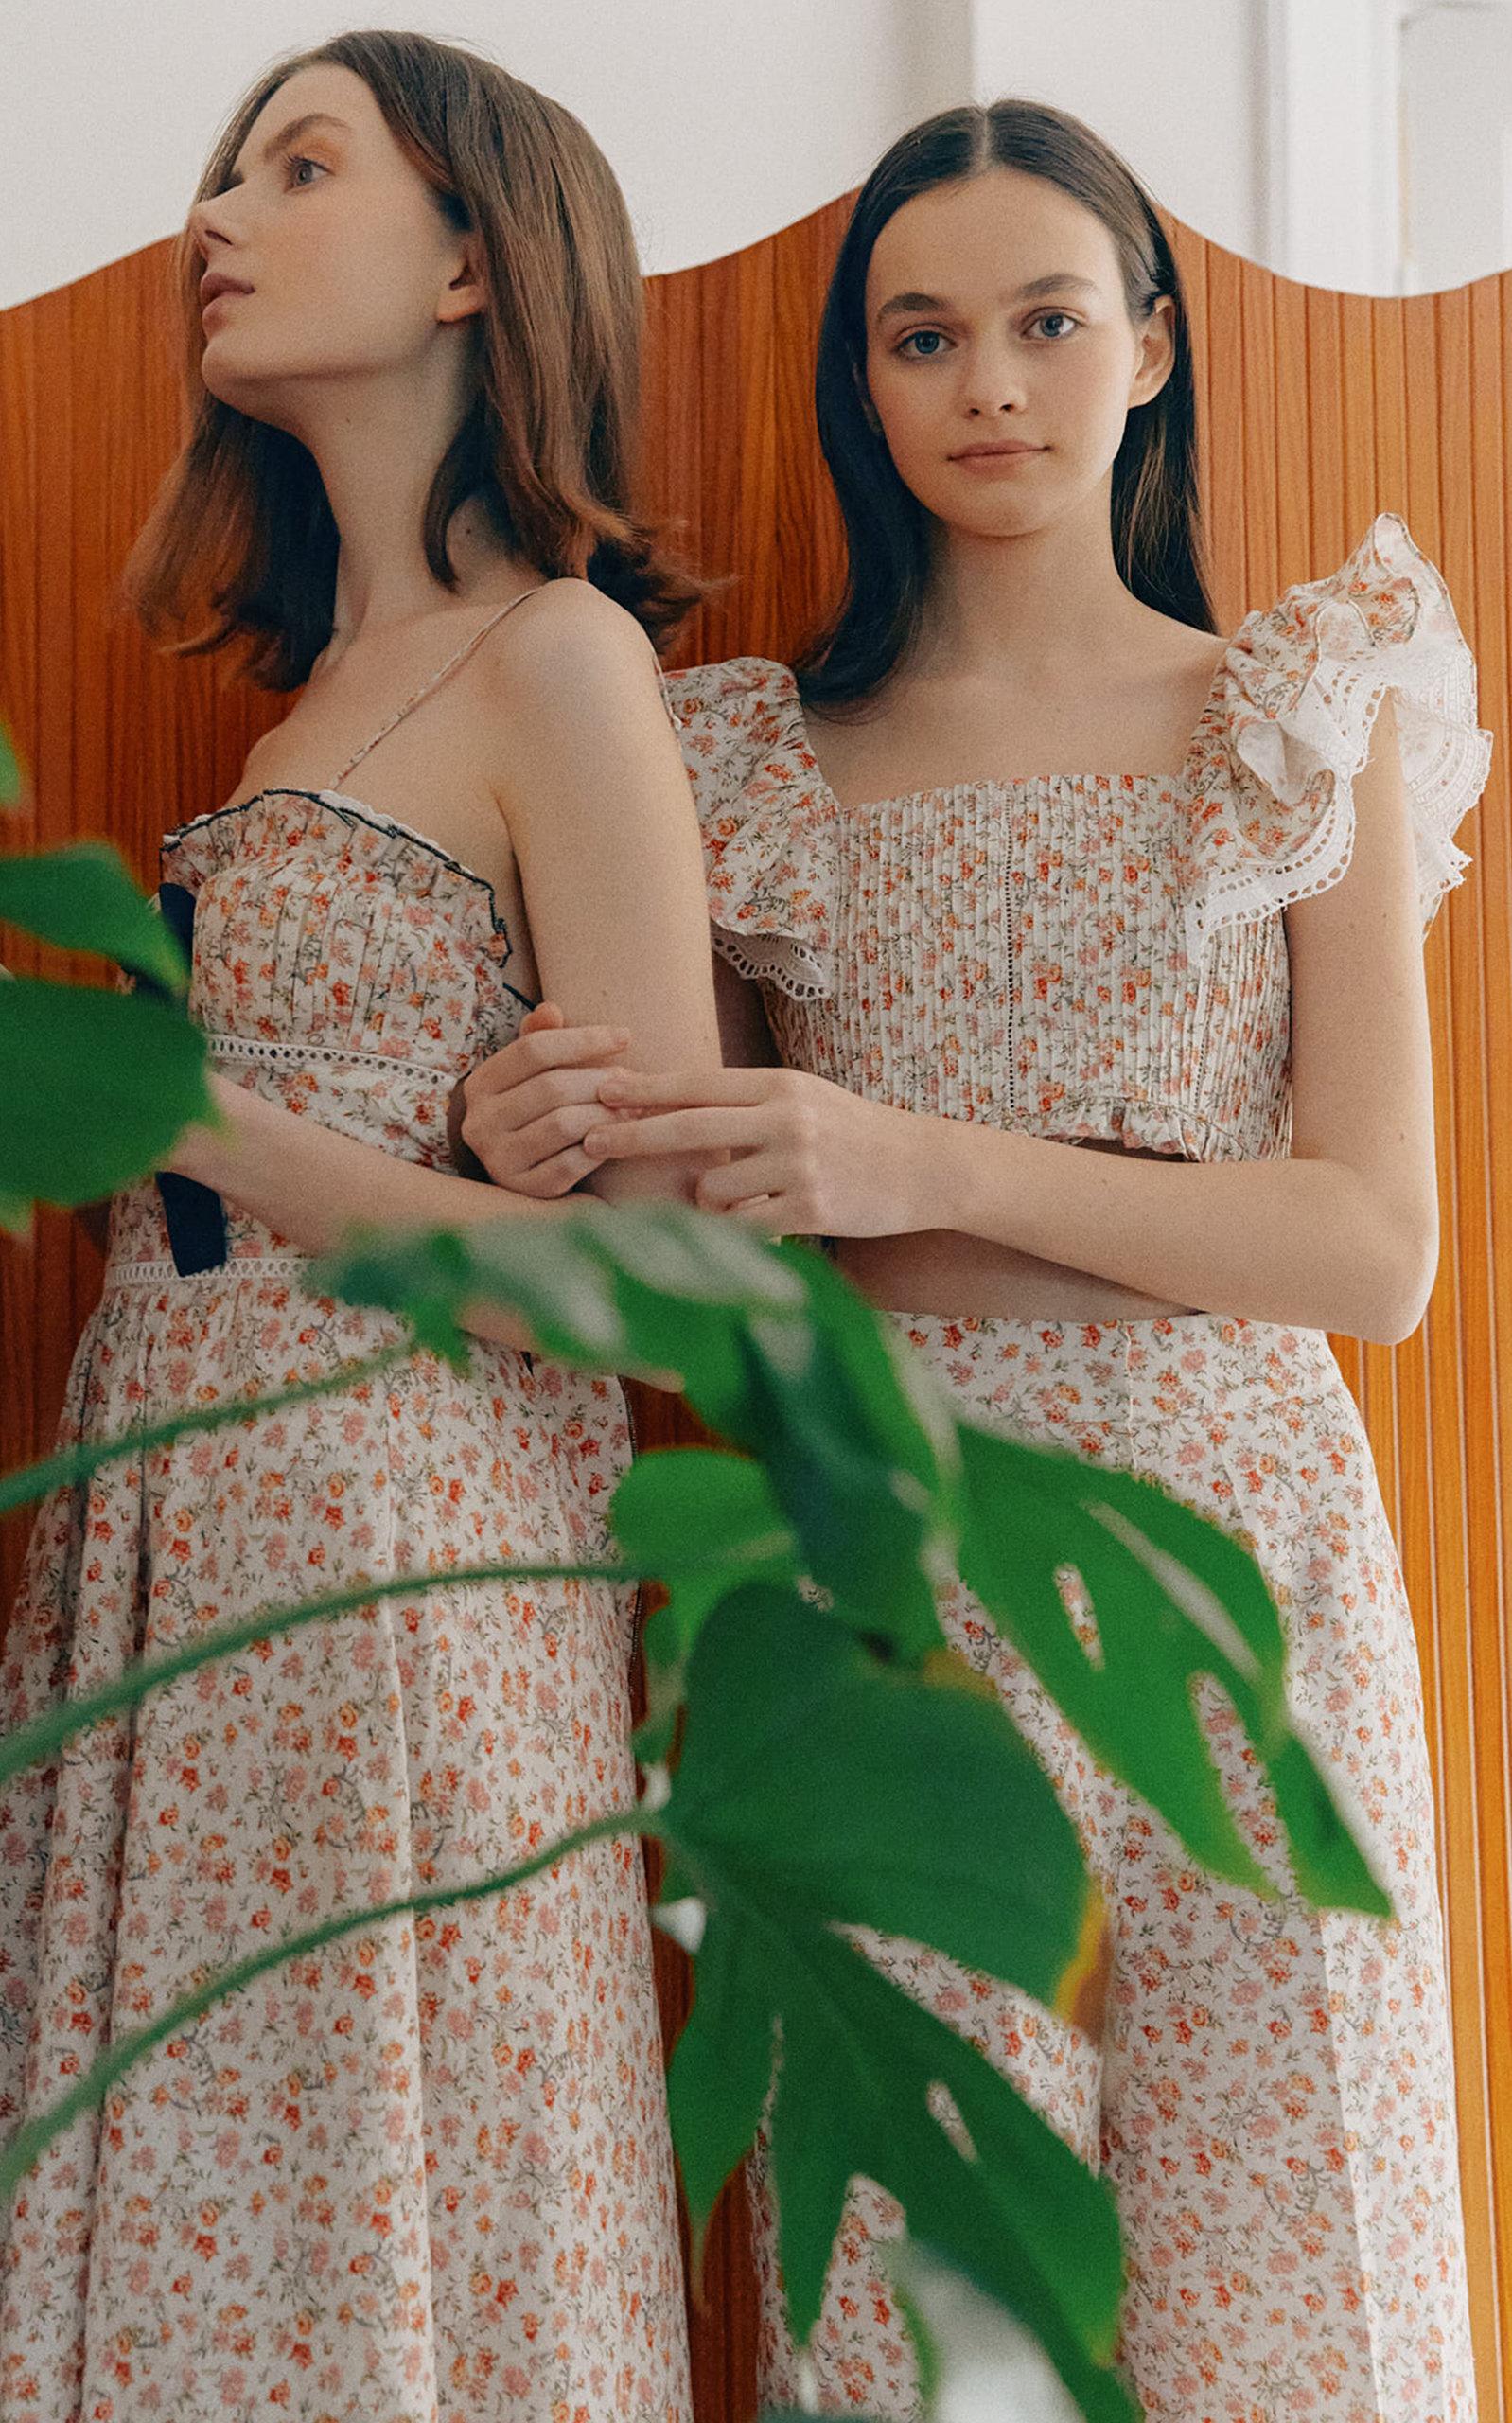 Lug Von Siga Melody Floral Cotton-blend Dress | Lyst